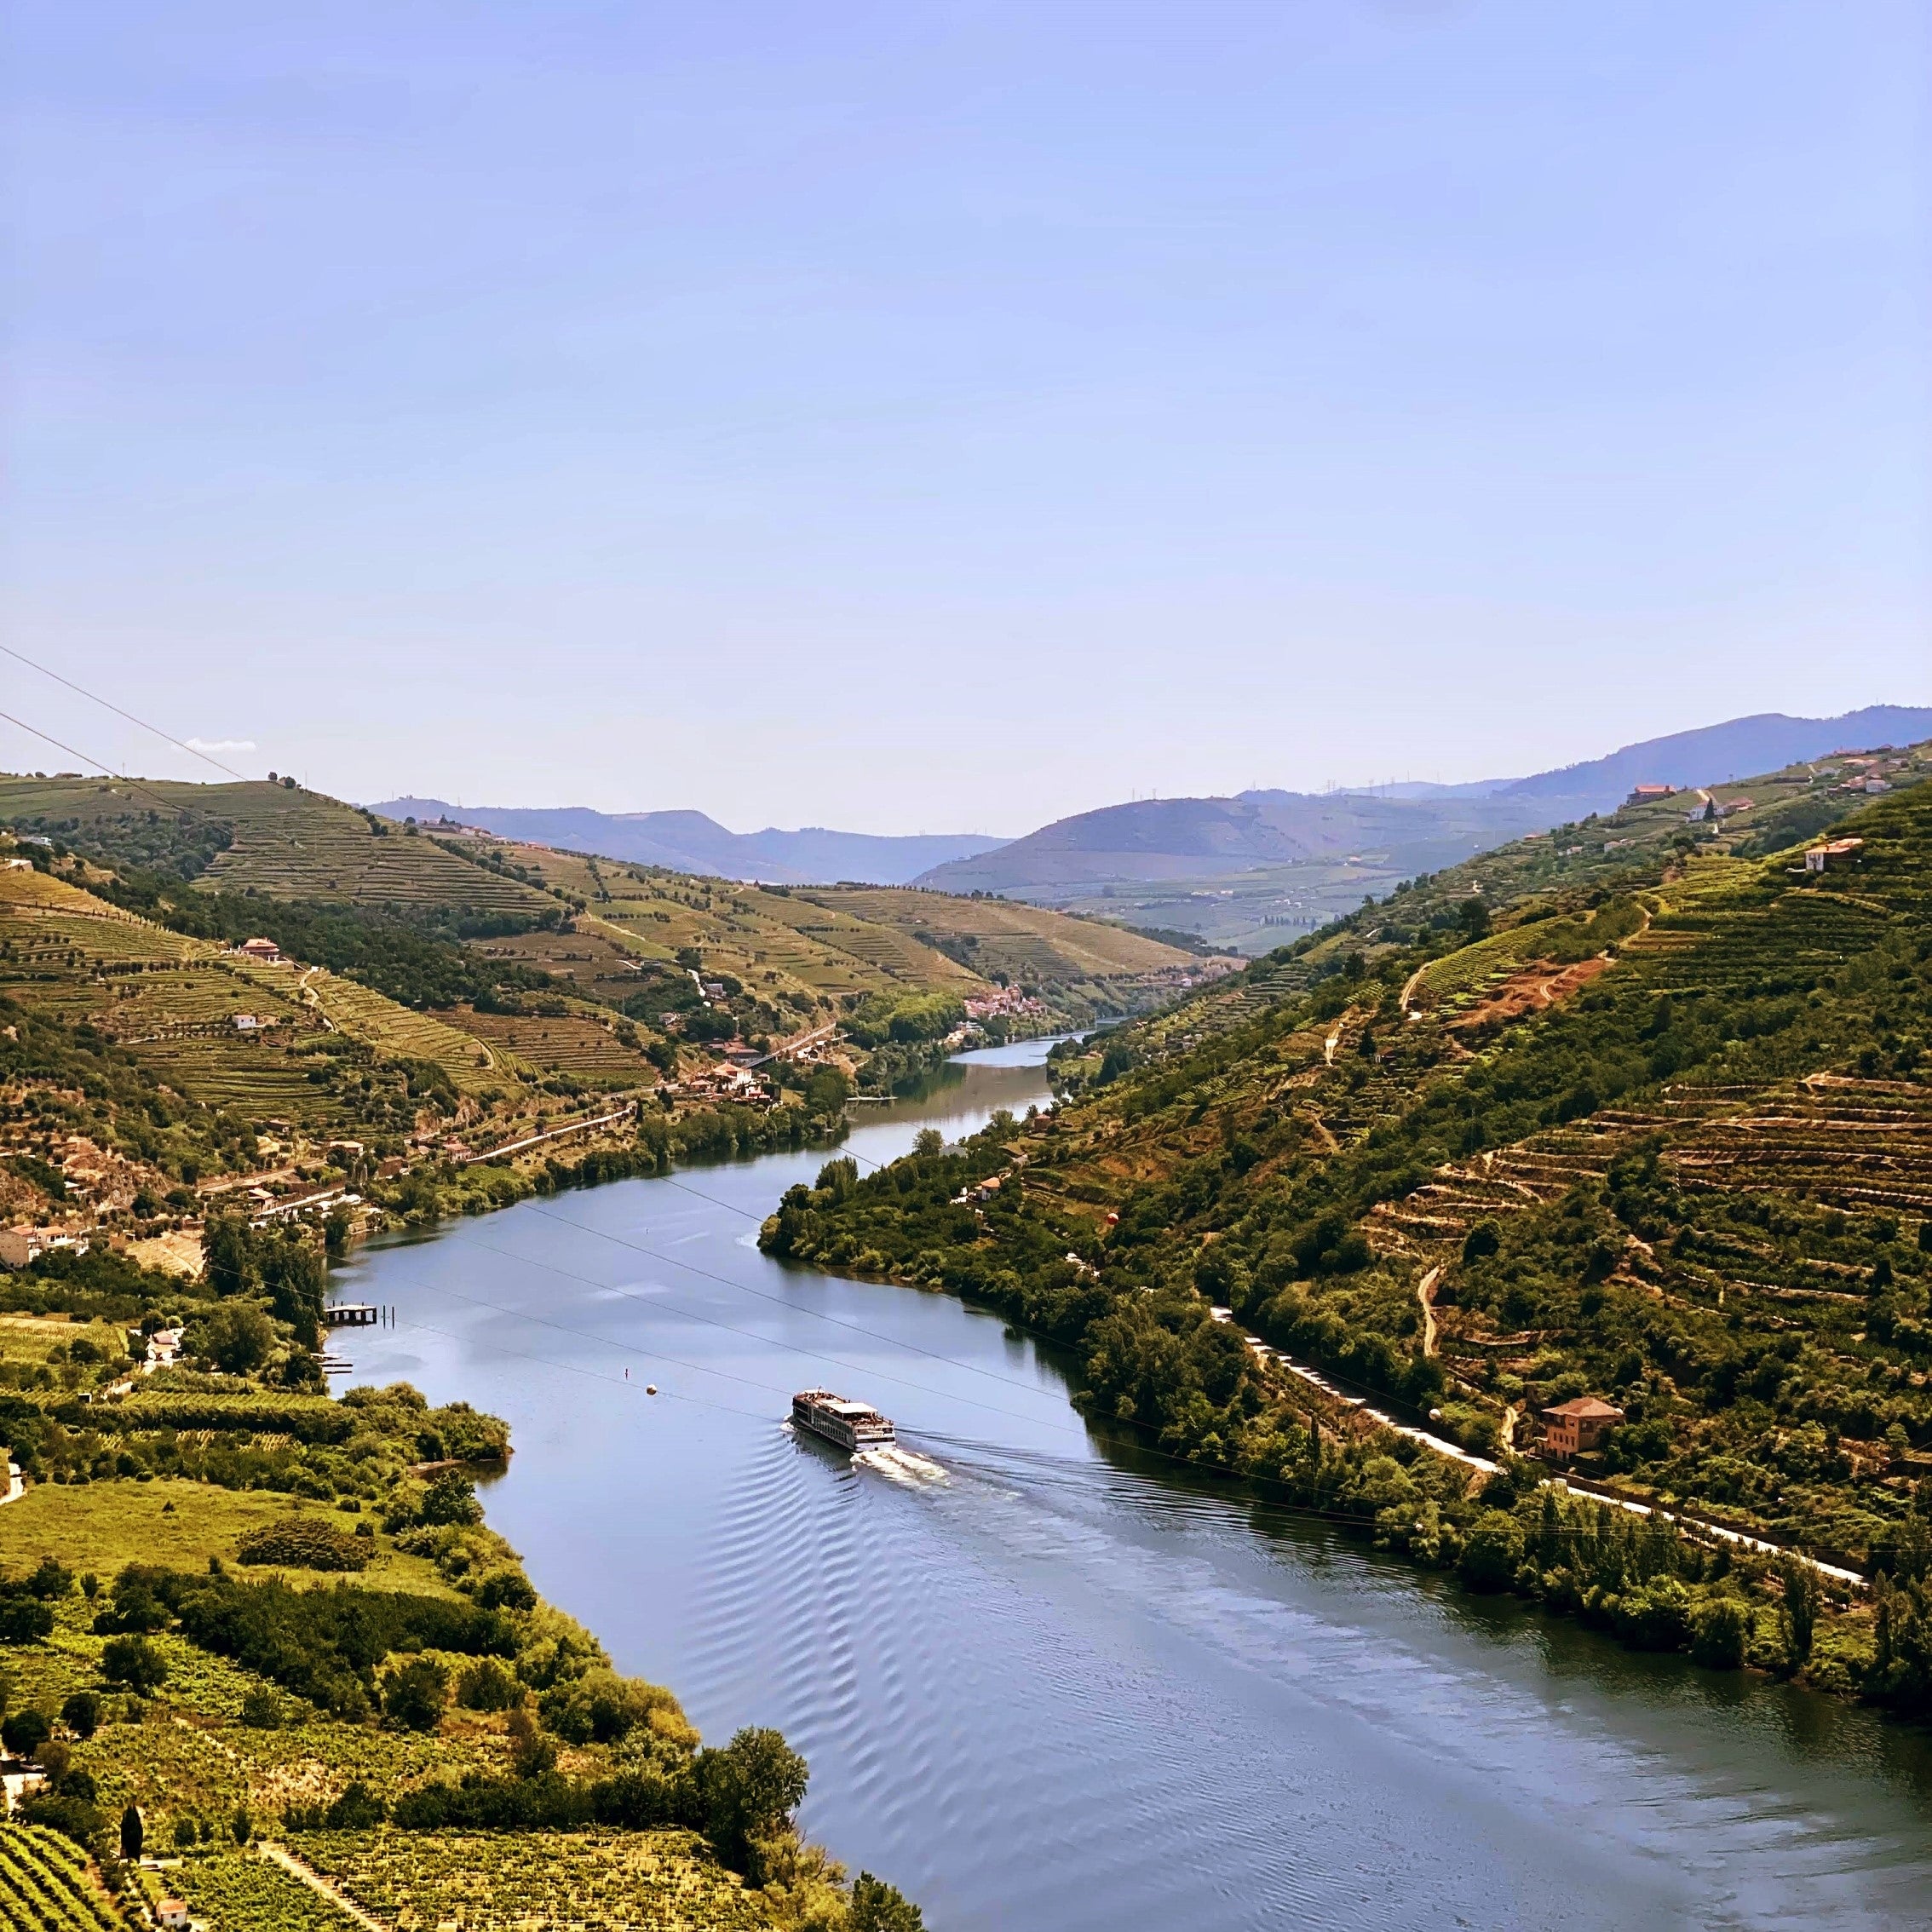 Descubra os melhores locais para tirar fotografias cinematográficas no Douro